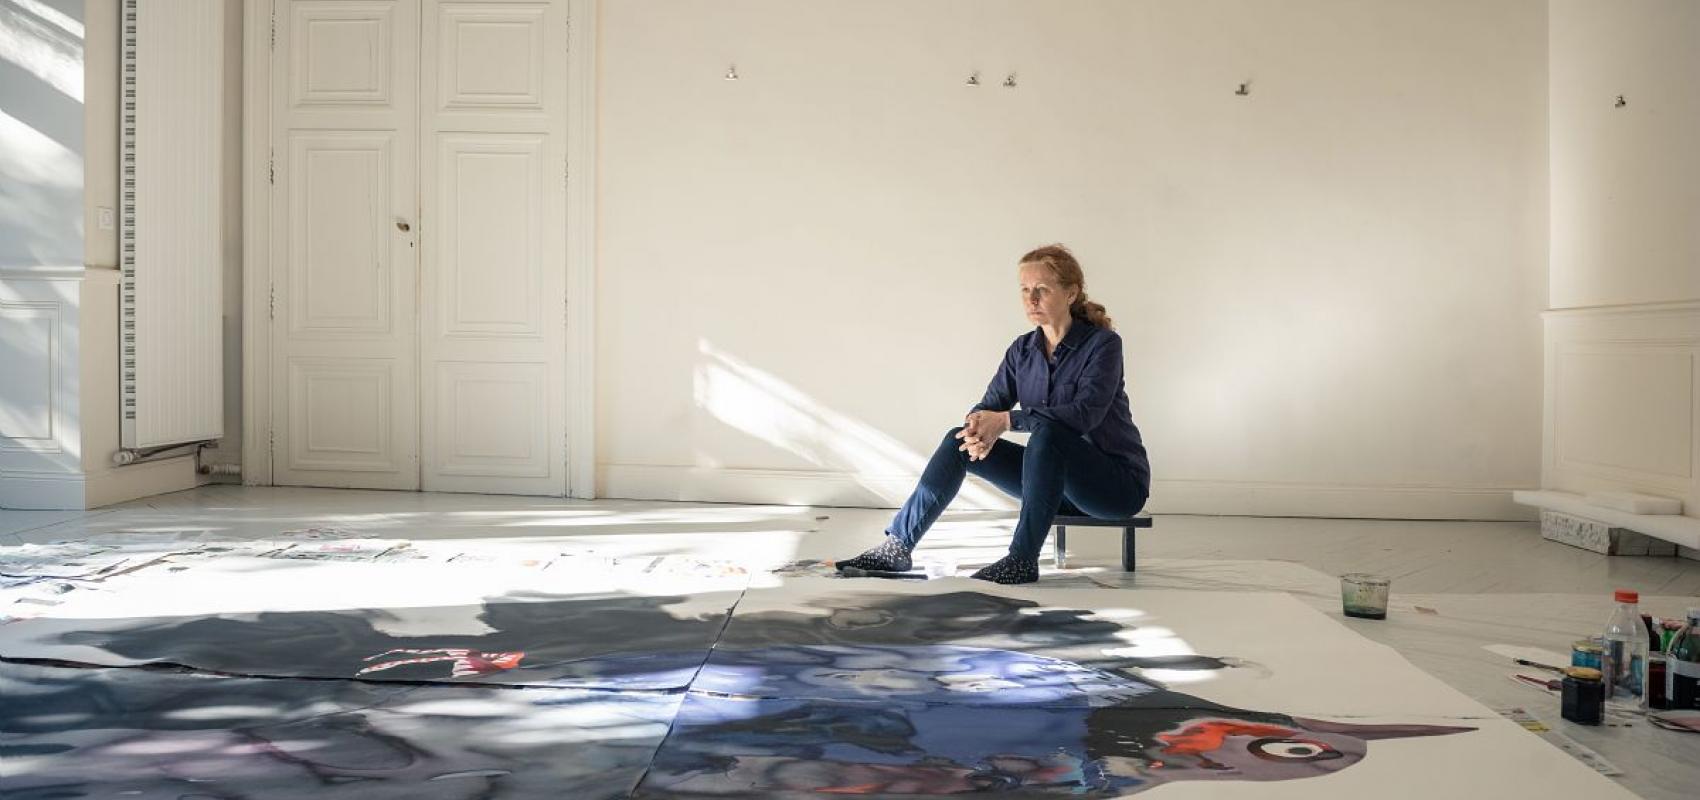 Françoise Pétrovitch dans son atelier -  - © Hervé Plumet Courtesy Semiose